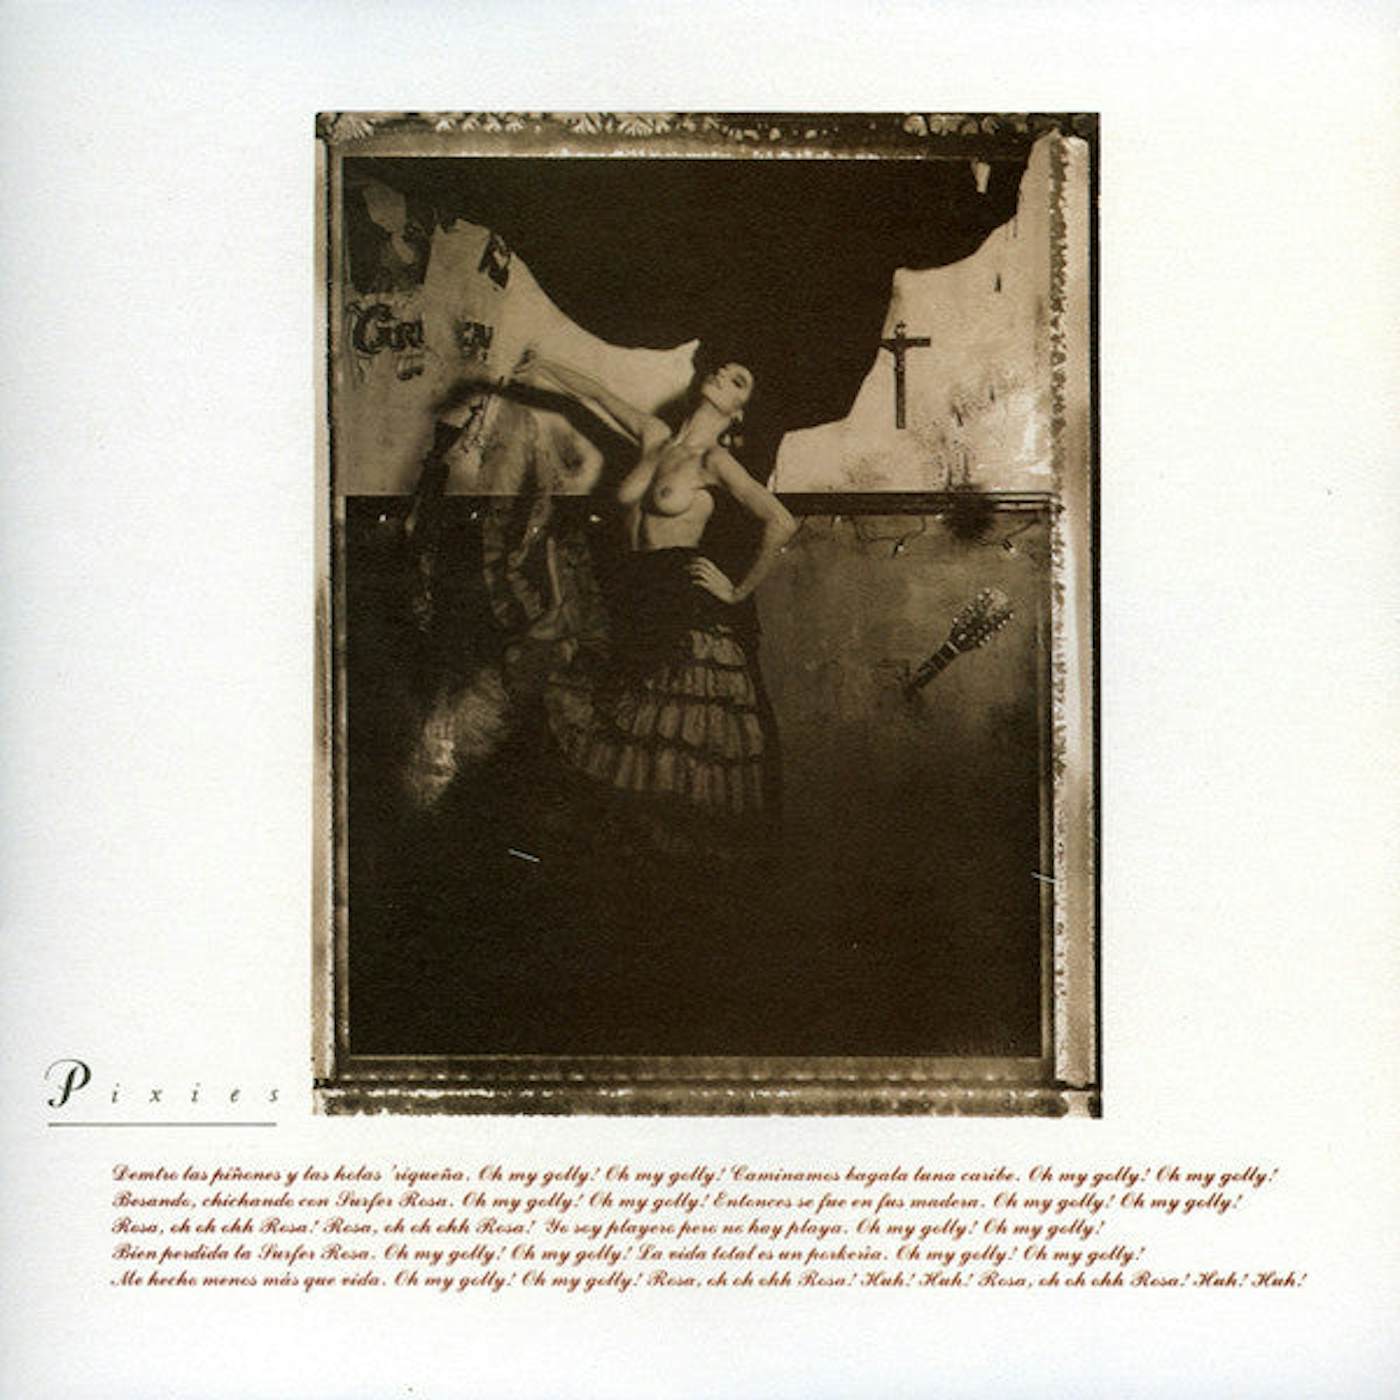 Pixies LP Vinyl Record - Surfer Rosa